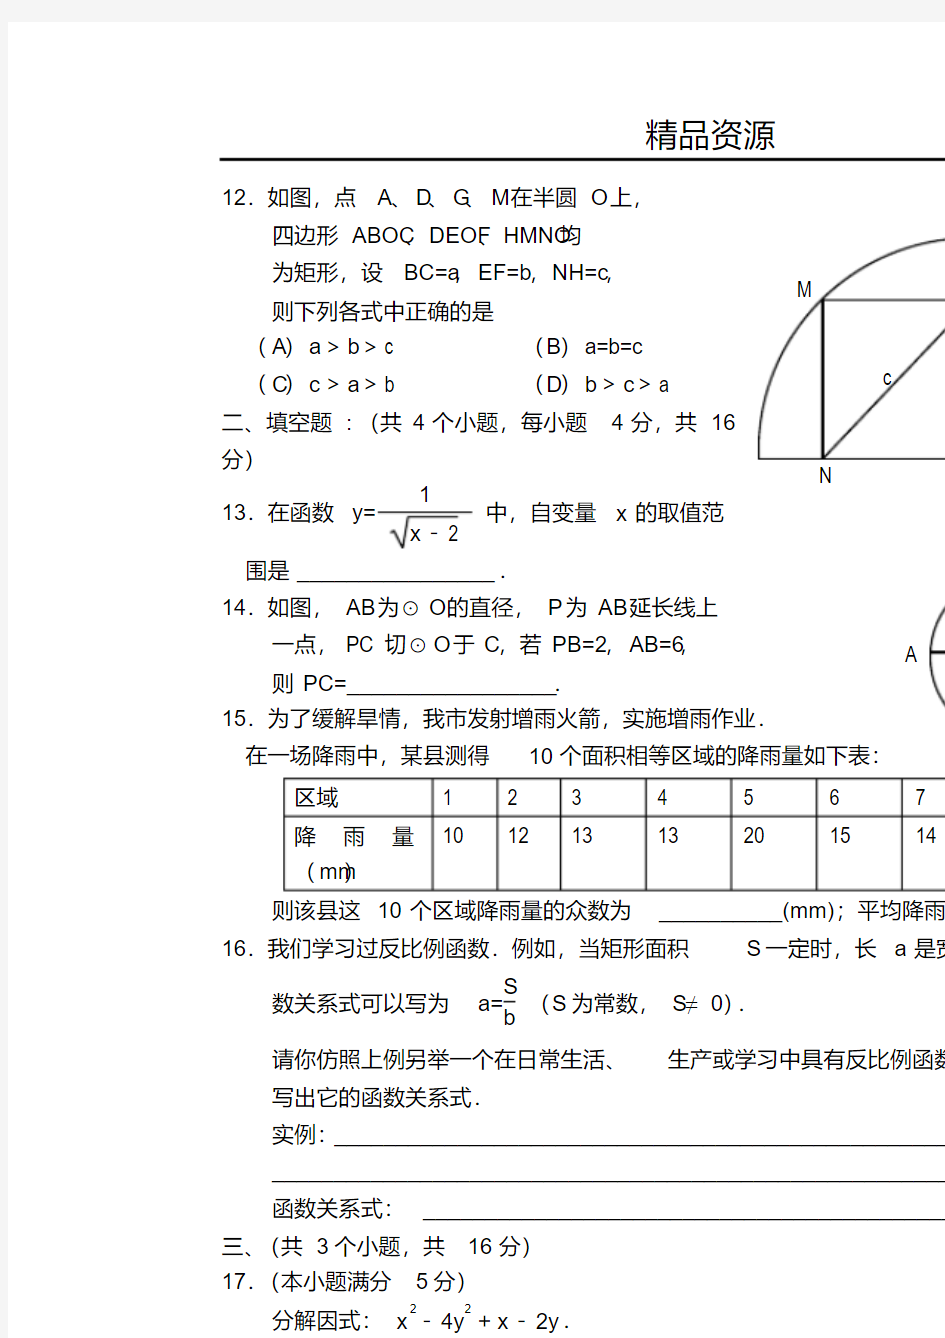 2004年北京中考数学试题及解答-